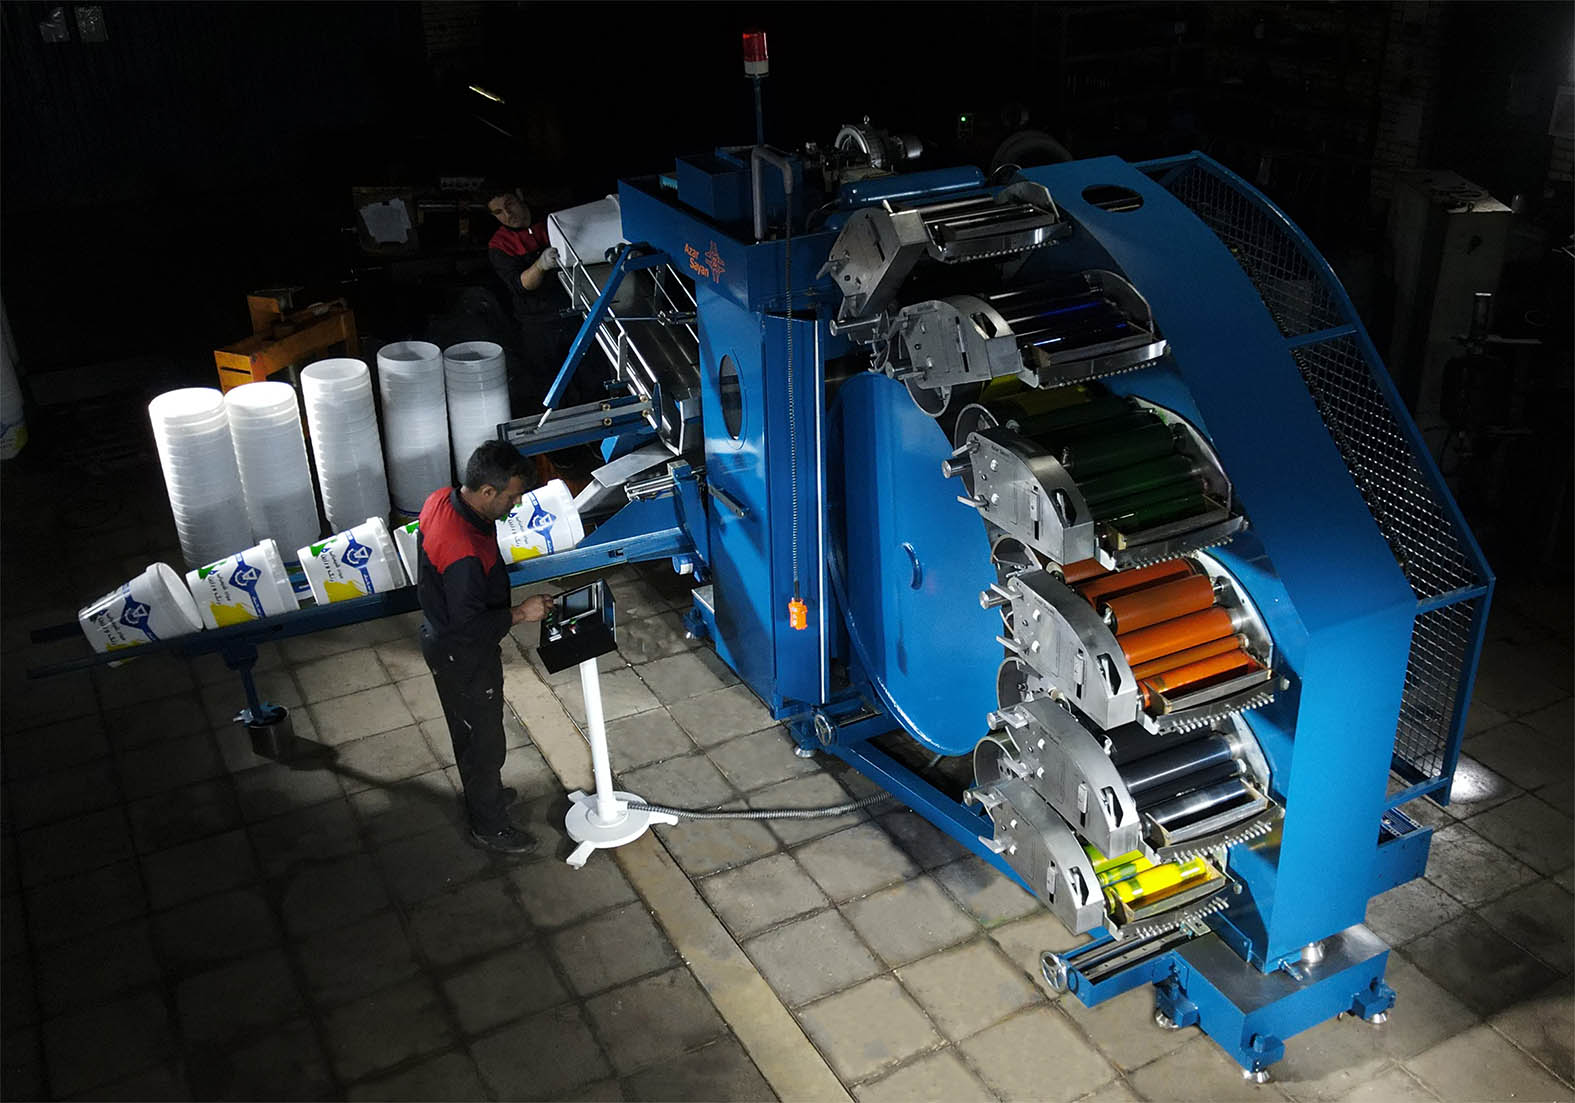 ماشین چاپ سطل شش رنگ ساخته شده در شرکت آذرسایان ماشین که با اپراتوری آسان درحال کار است.